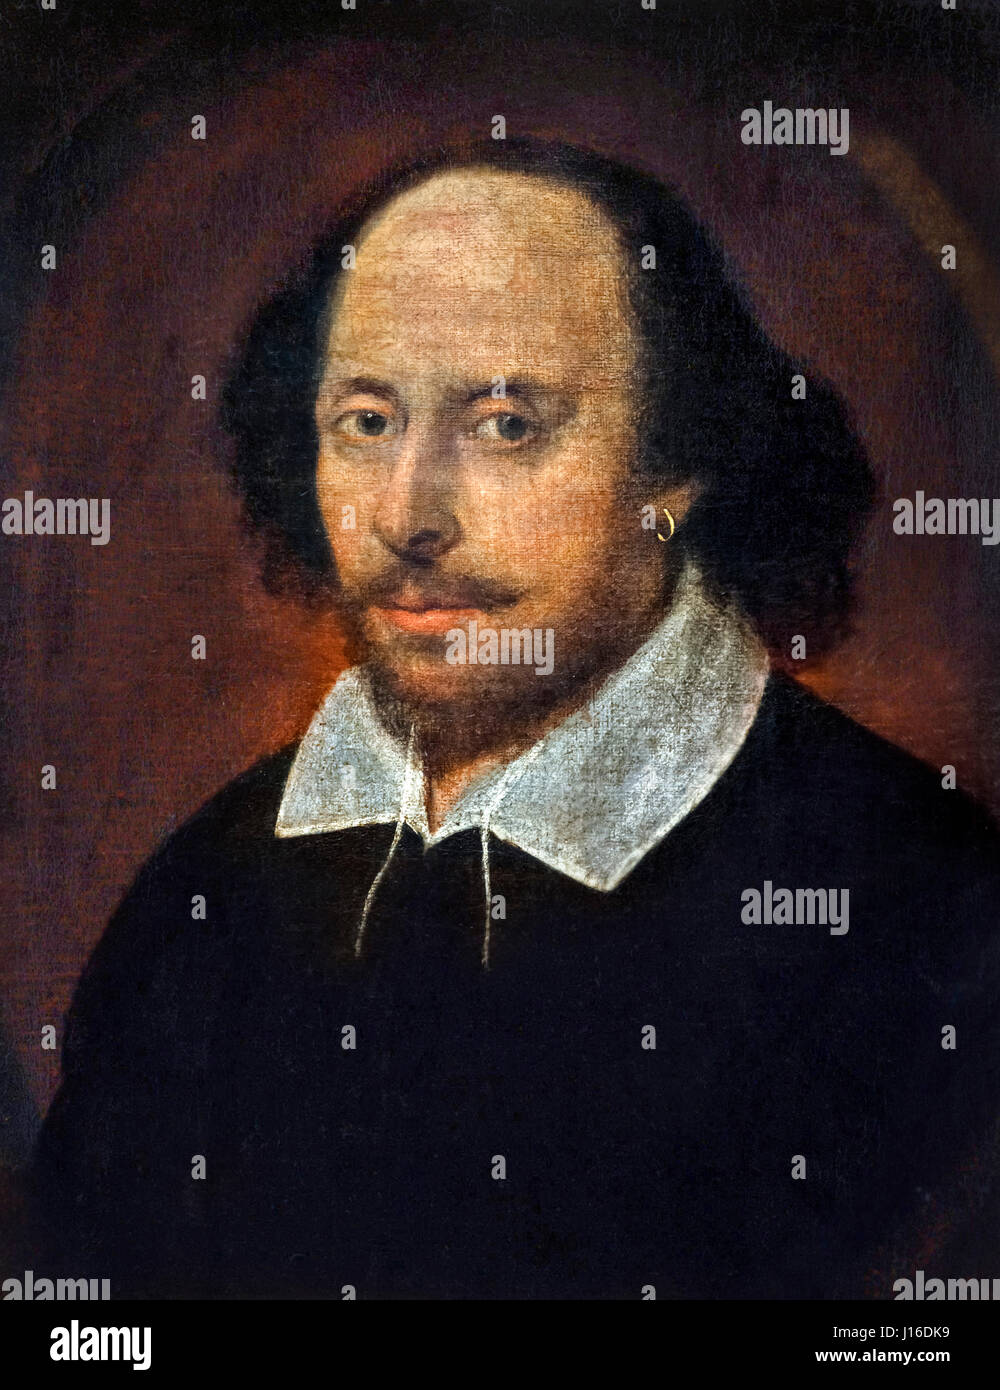 William Shakespeare, der Chandos-Porträt. Gemälde von William Shakespeare, John Taylor, Öl auf Leinwand, zugeschrieben c.1600-1610. Stockfoto